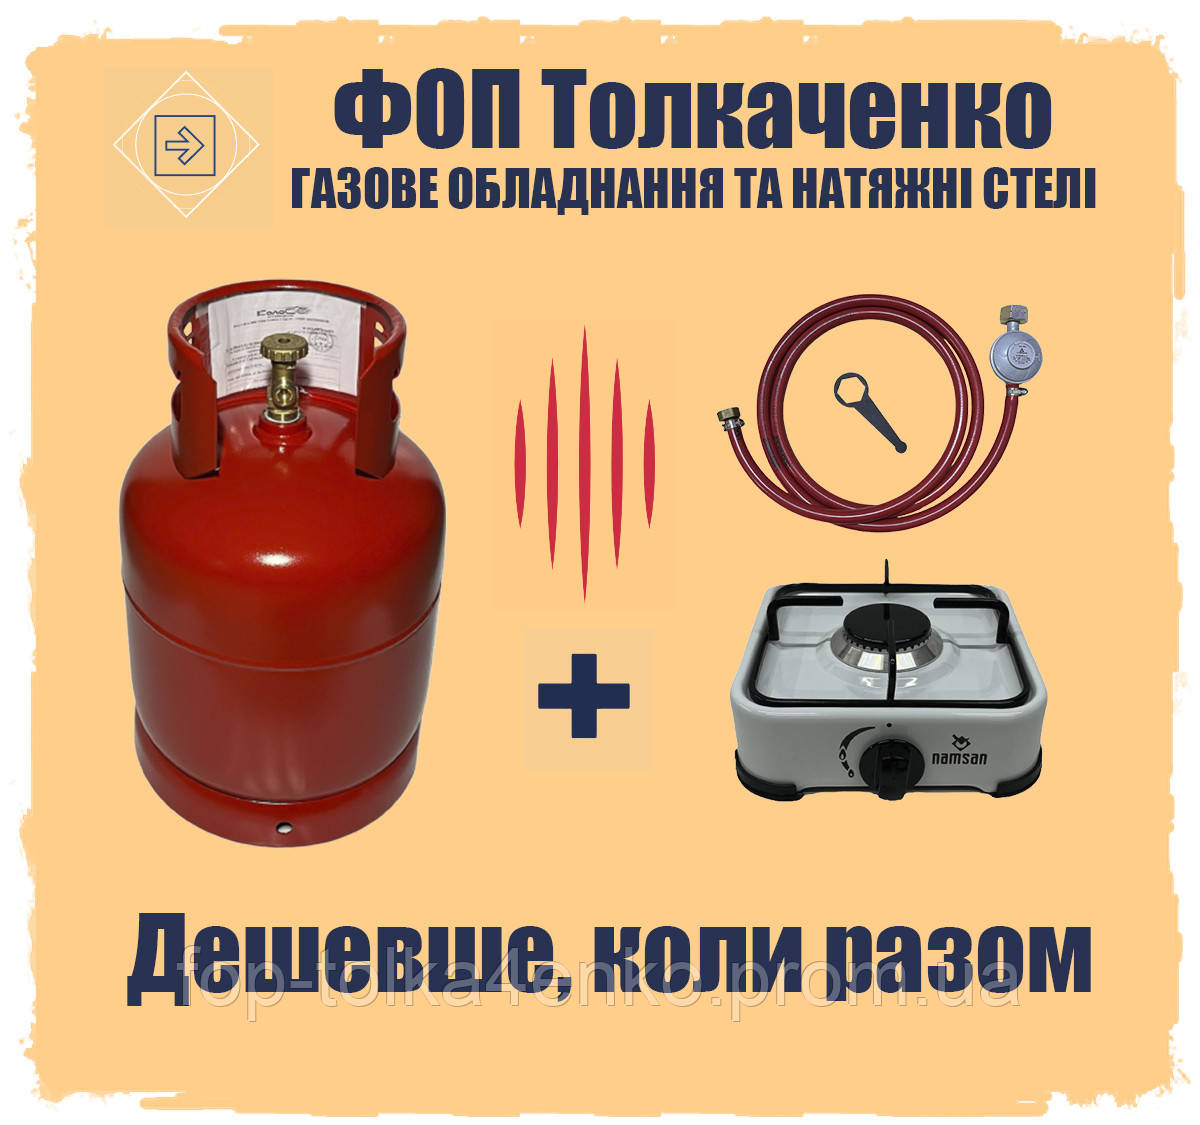 Металевий газовий балон 20л Болгарія з плитою на одну конфорку шлангом та редуктором